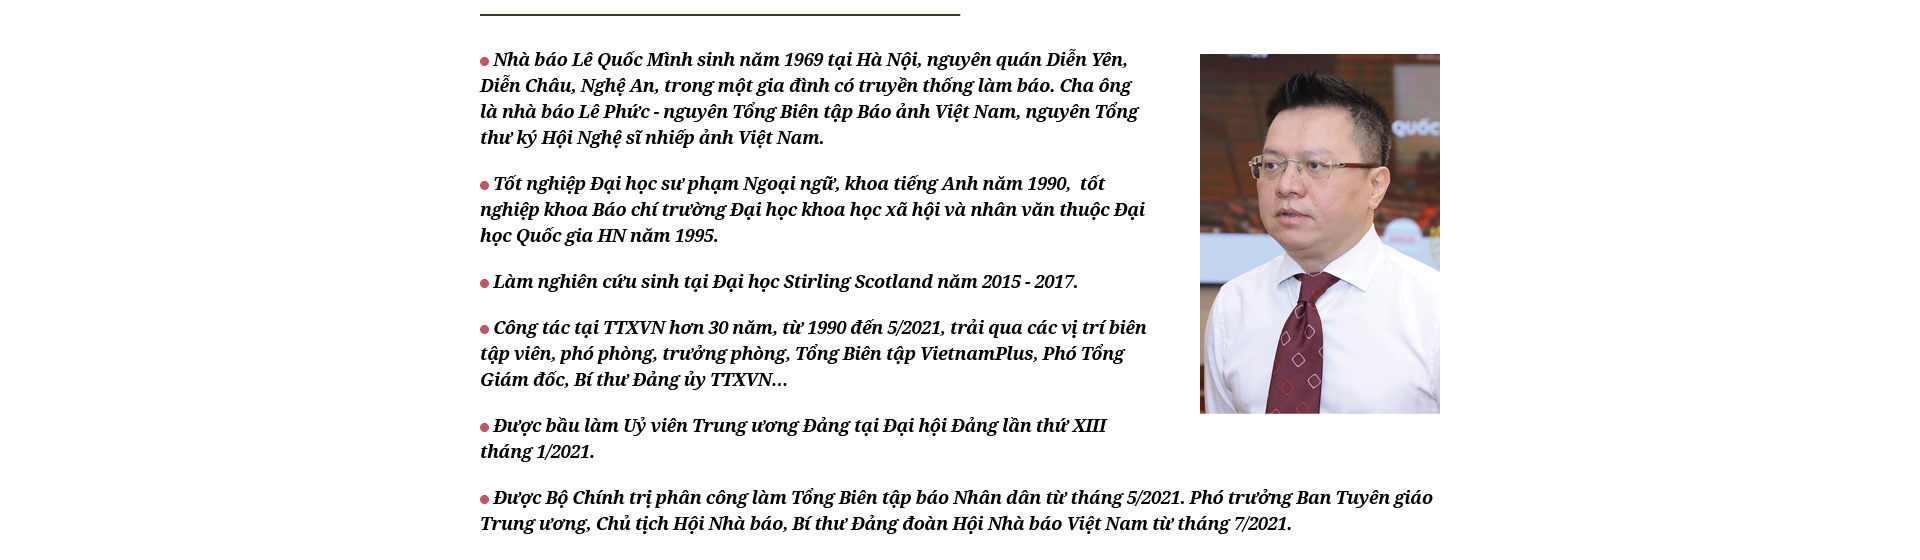 Nhà báo Lê Quốc Minh, Chủ tịch Hội Nhà báo Việt Nam: Khác biệt bằng tư duy và sáng tạo - Ảnh 16.